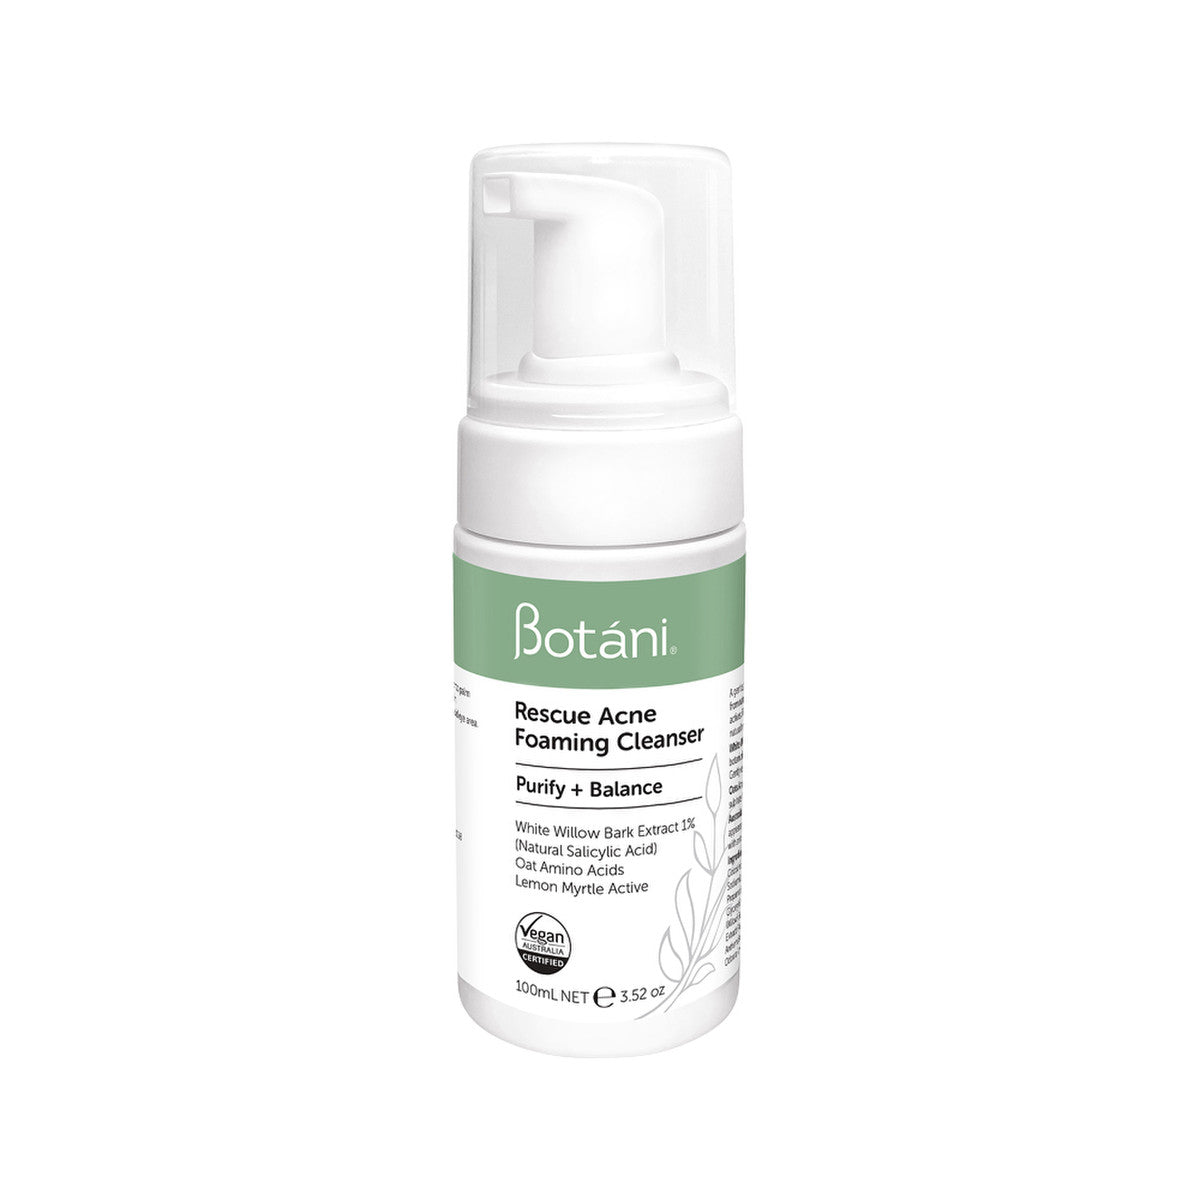 Botani - Rescue Acne Foaming Cleanser